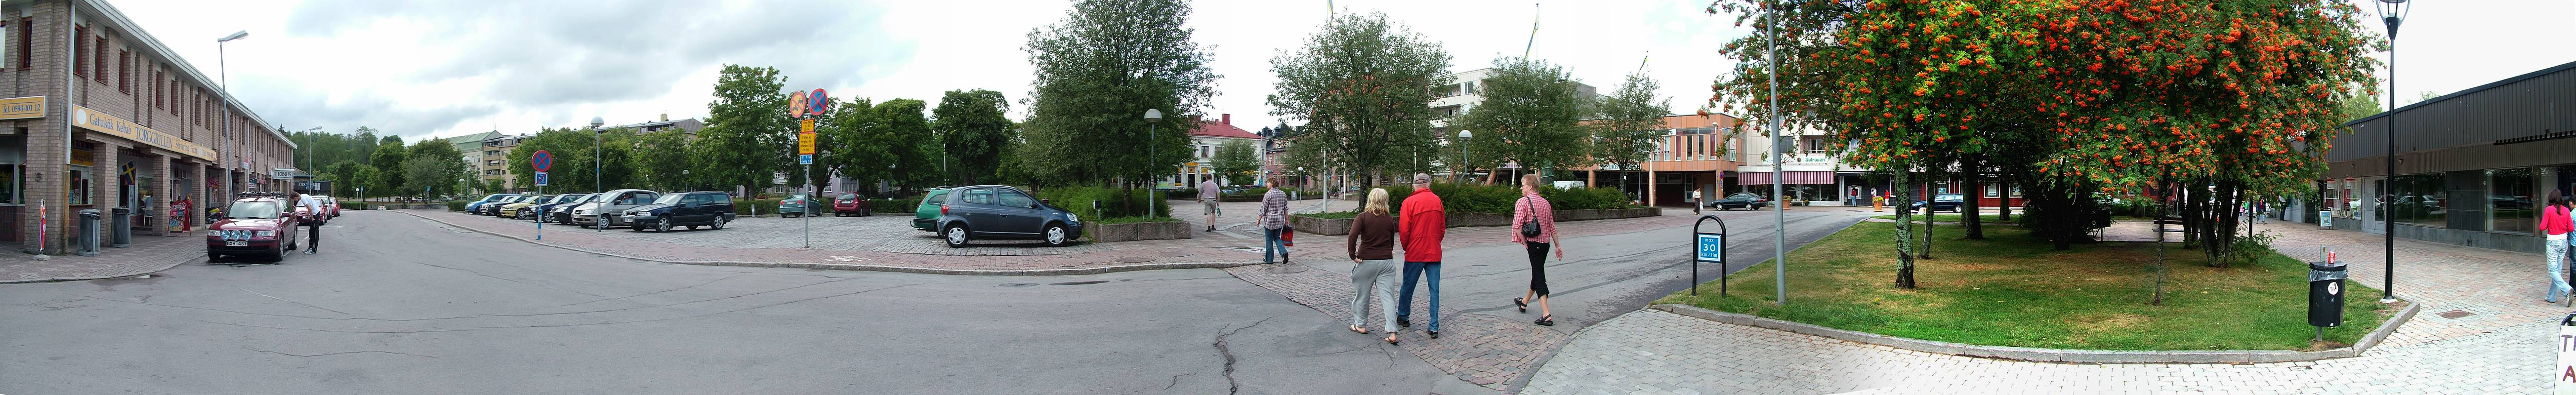 Filipstad ist großzügig angelegt, mitten in der Stadt ist ein Park und der Fluss Skillerälven zwischen dem nördlichen Lersjön und dem südlichen Daglösen.